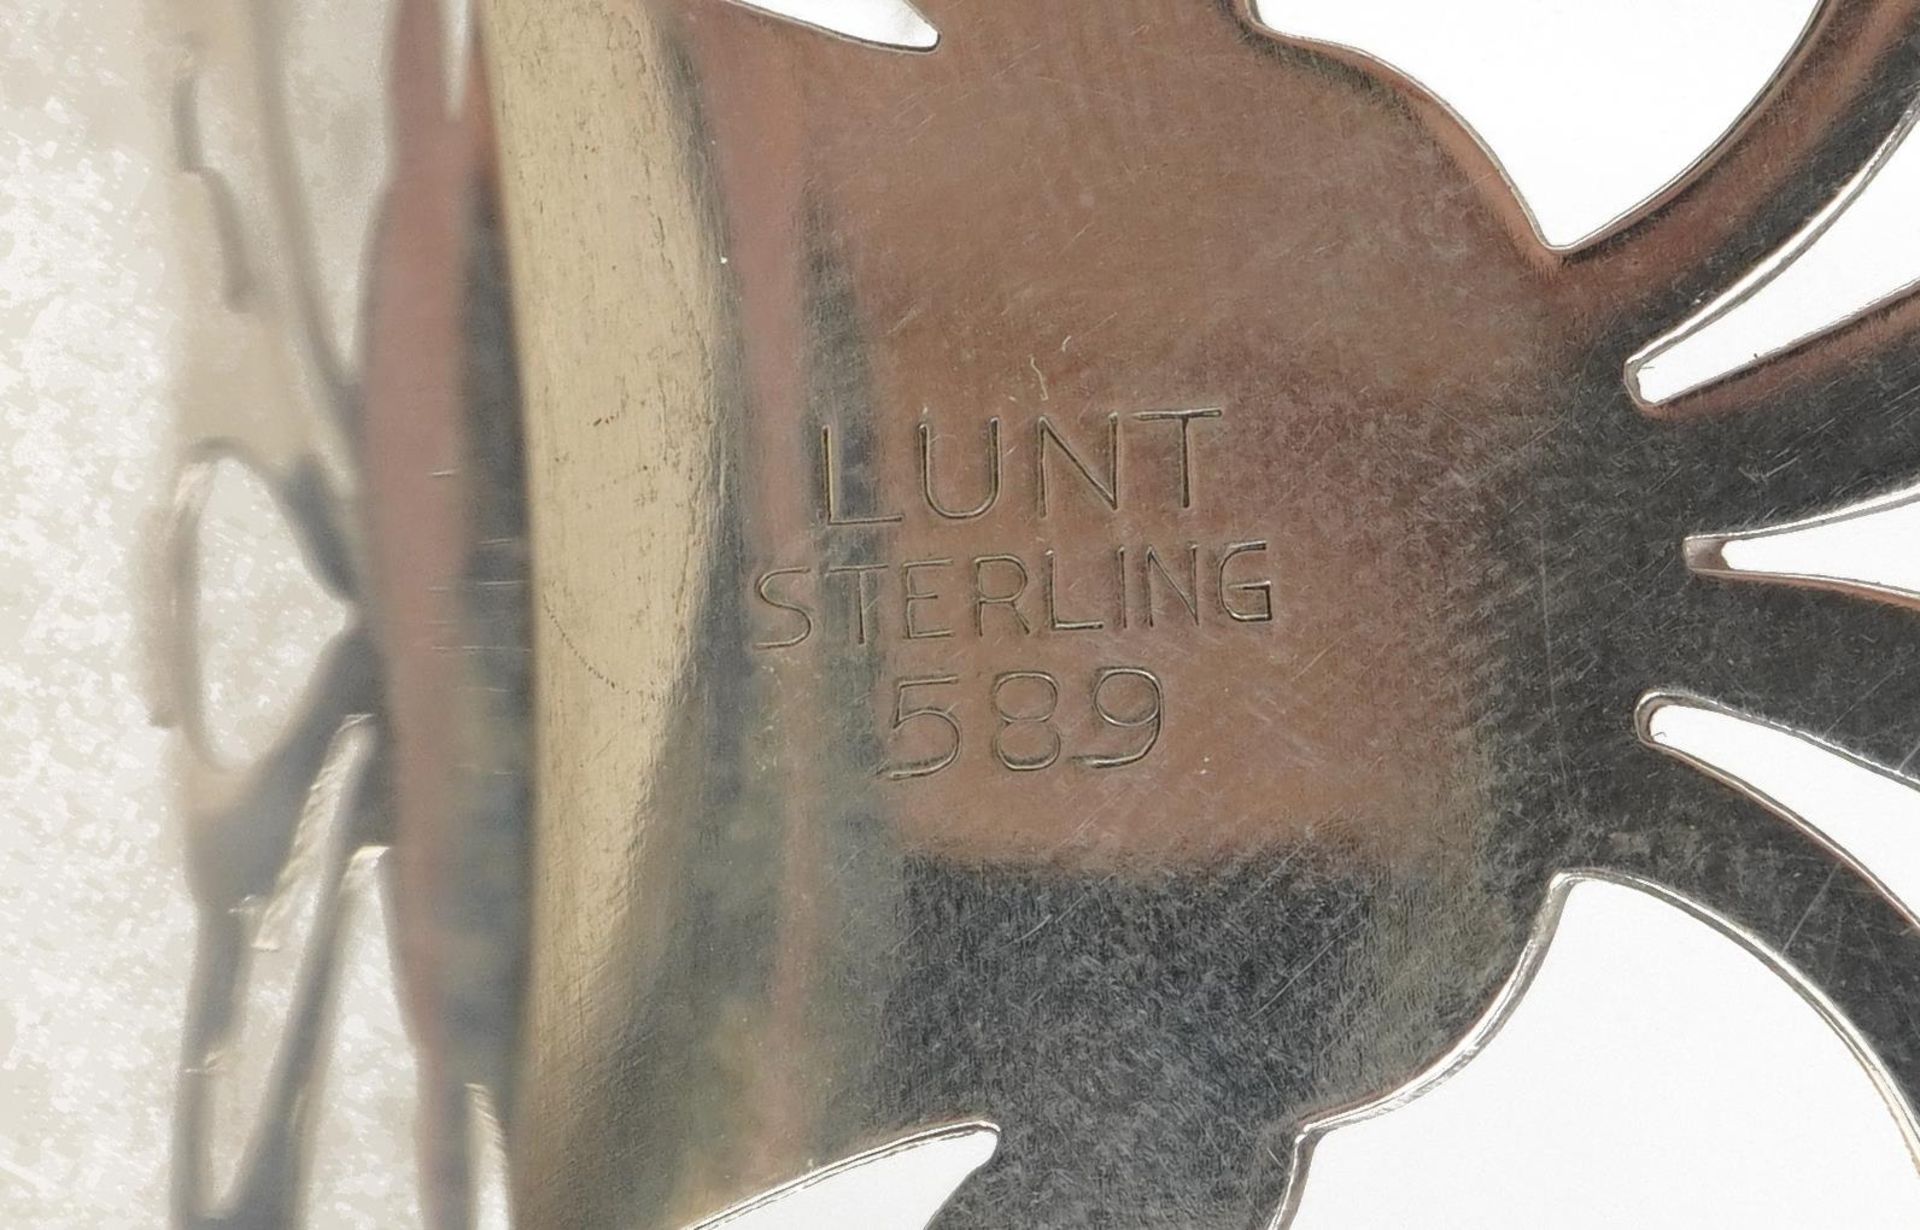 Lunt, sterling silver porringer numbered 589, 16cm in length, 104.0g : For further information on - Bild 6 aus 6